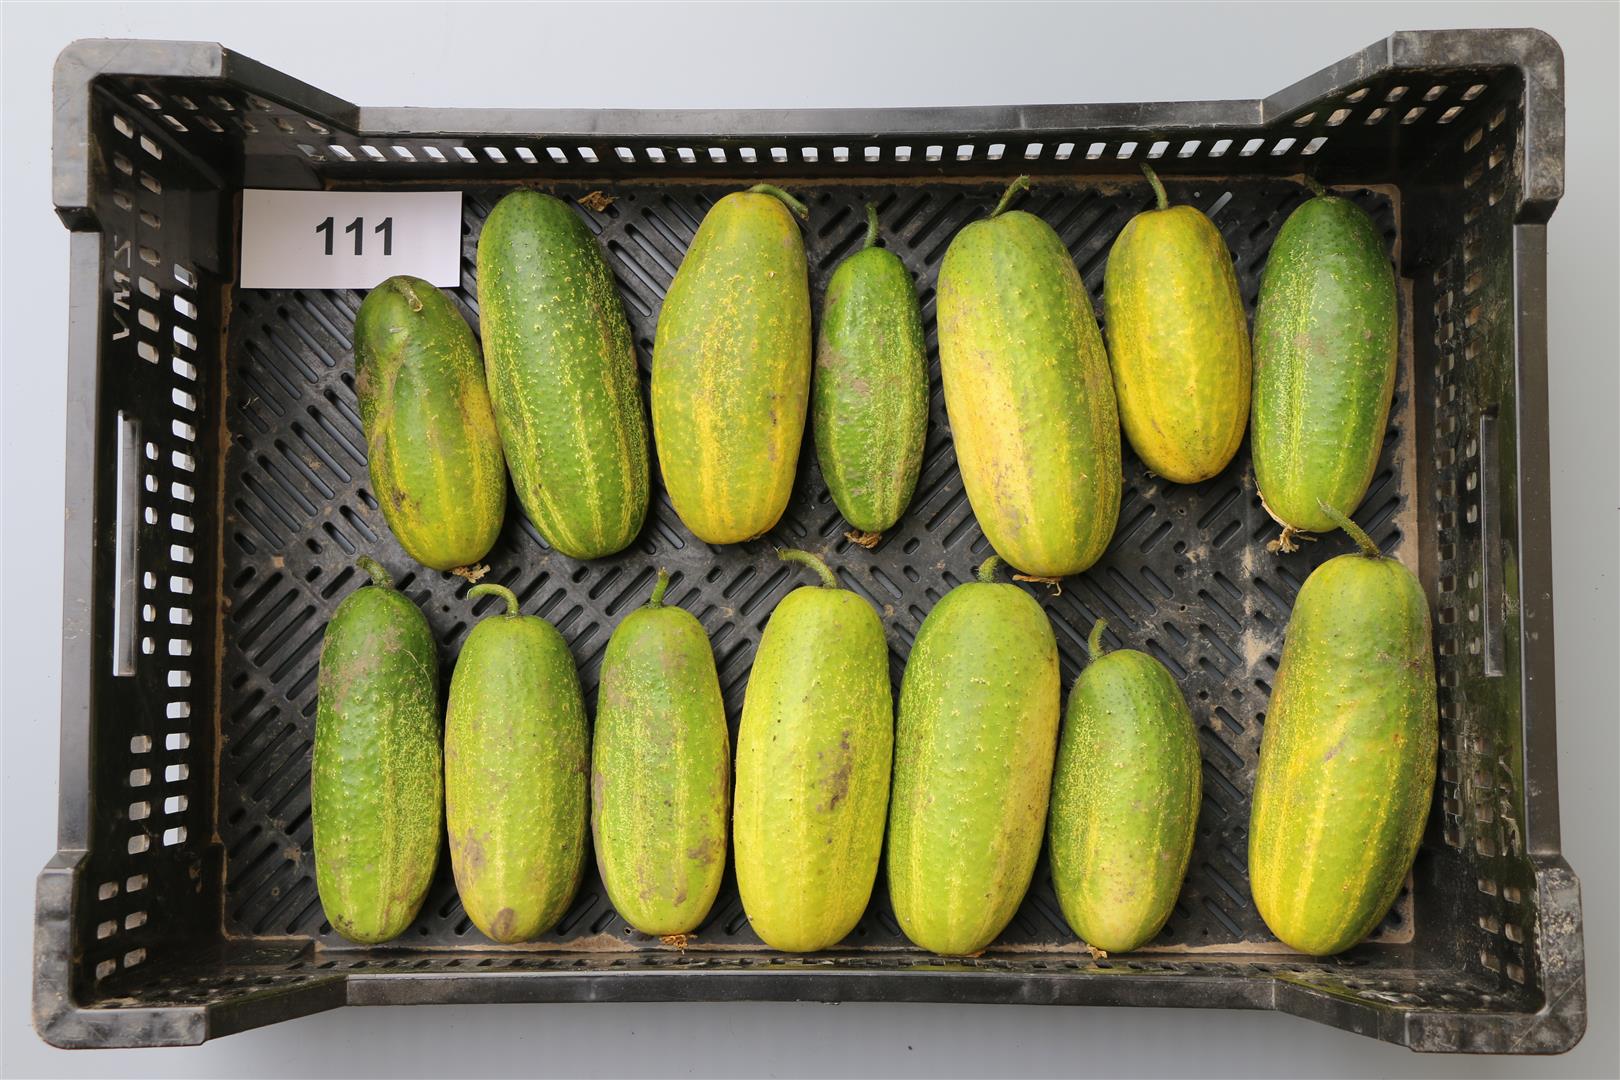 Cucumber 'Venloer Trauben,Vorgebirgstrauben, Cus170/72 (U146)'